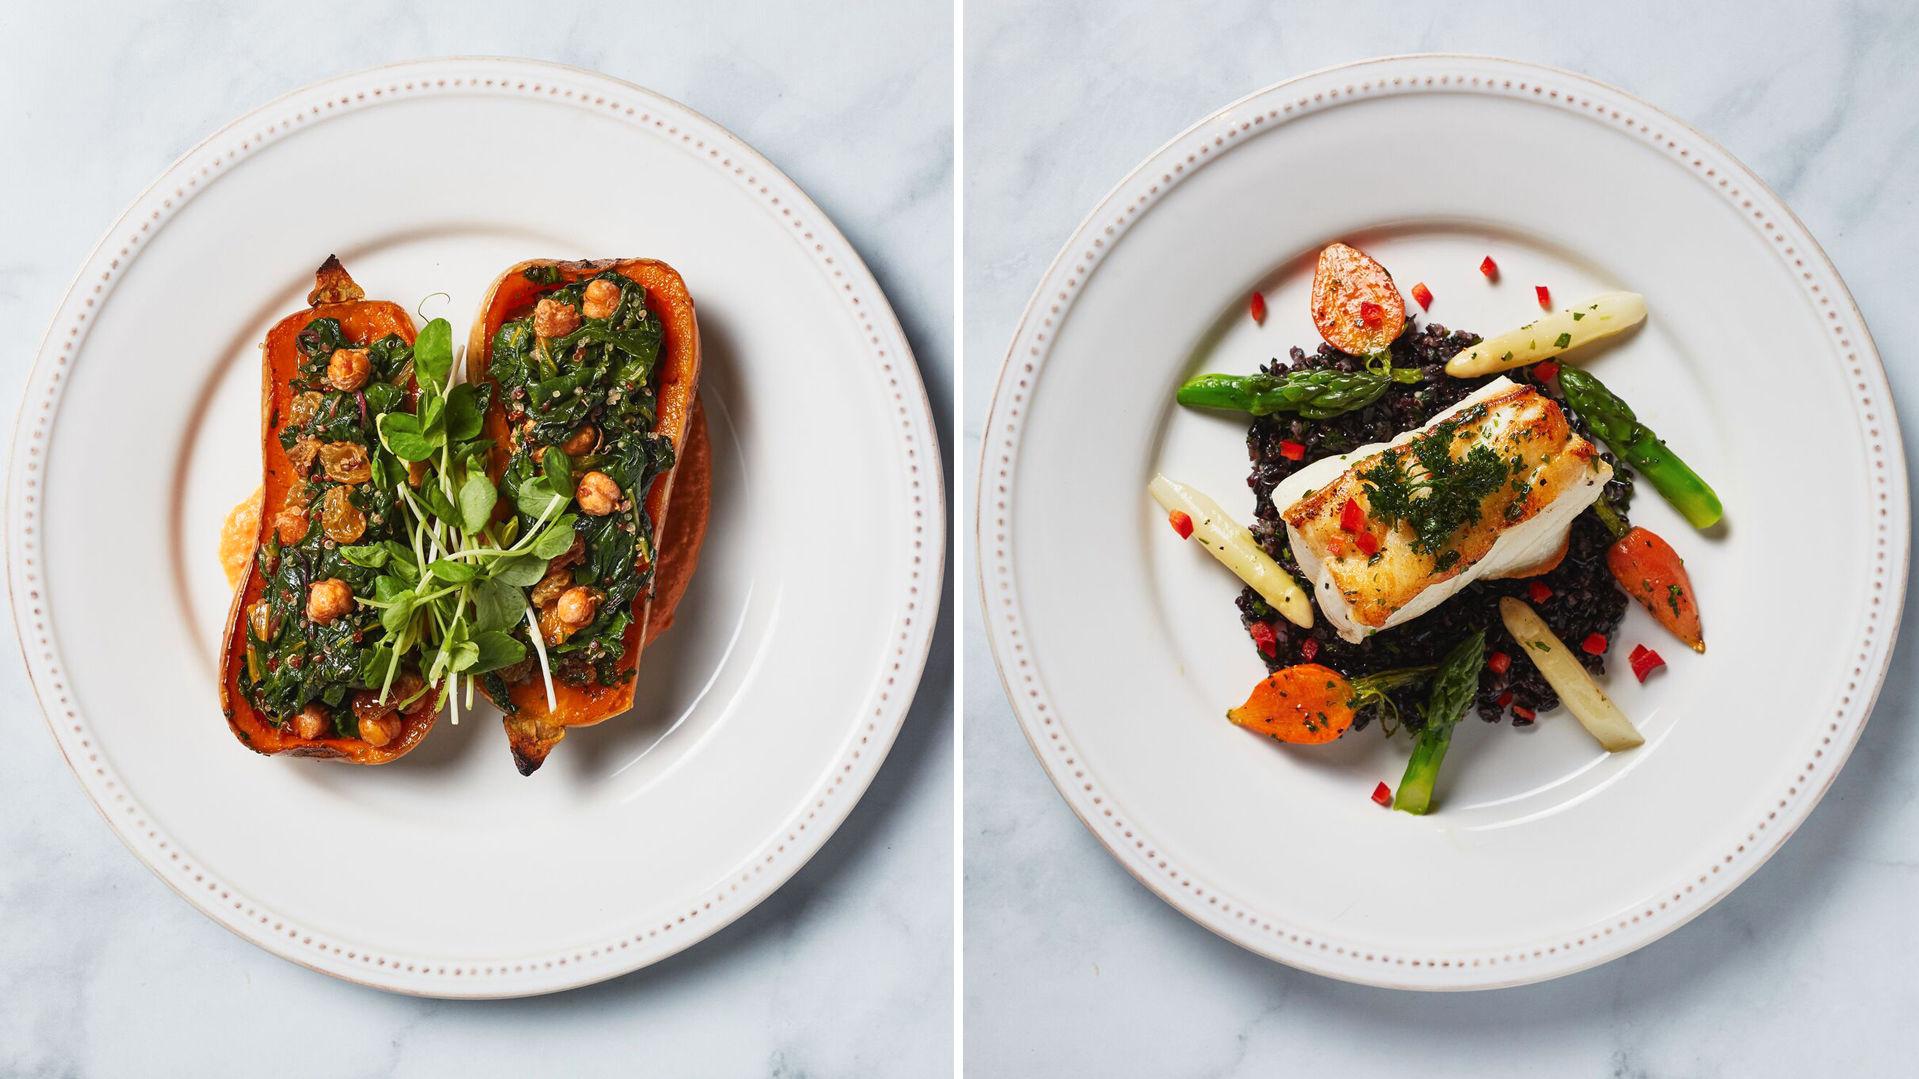 TO ALTERNATIVER: Gjestene kan velge mellom fisk eller vegetar til hovedrett. Foto: Golden Globe